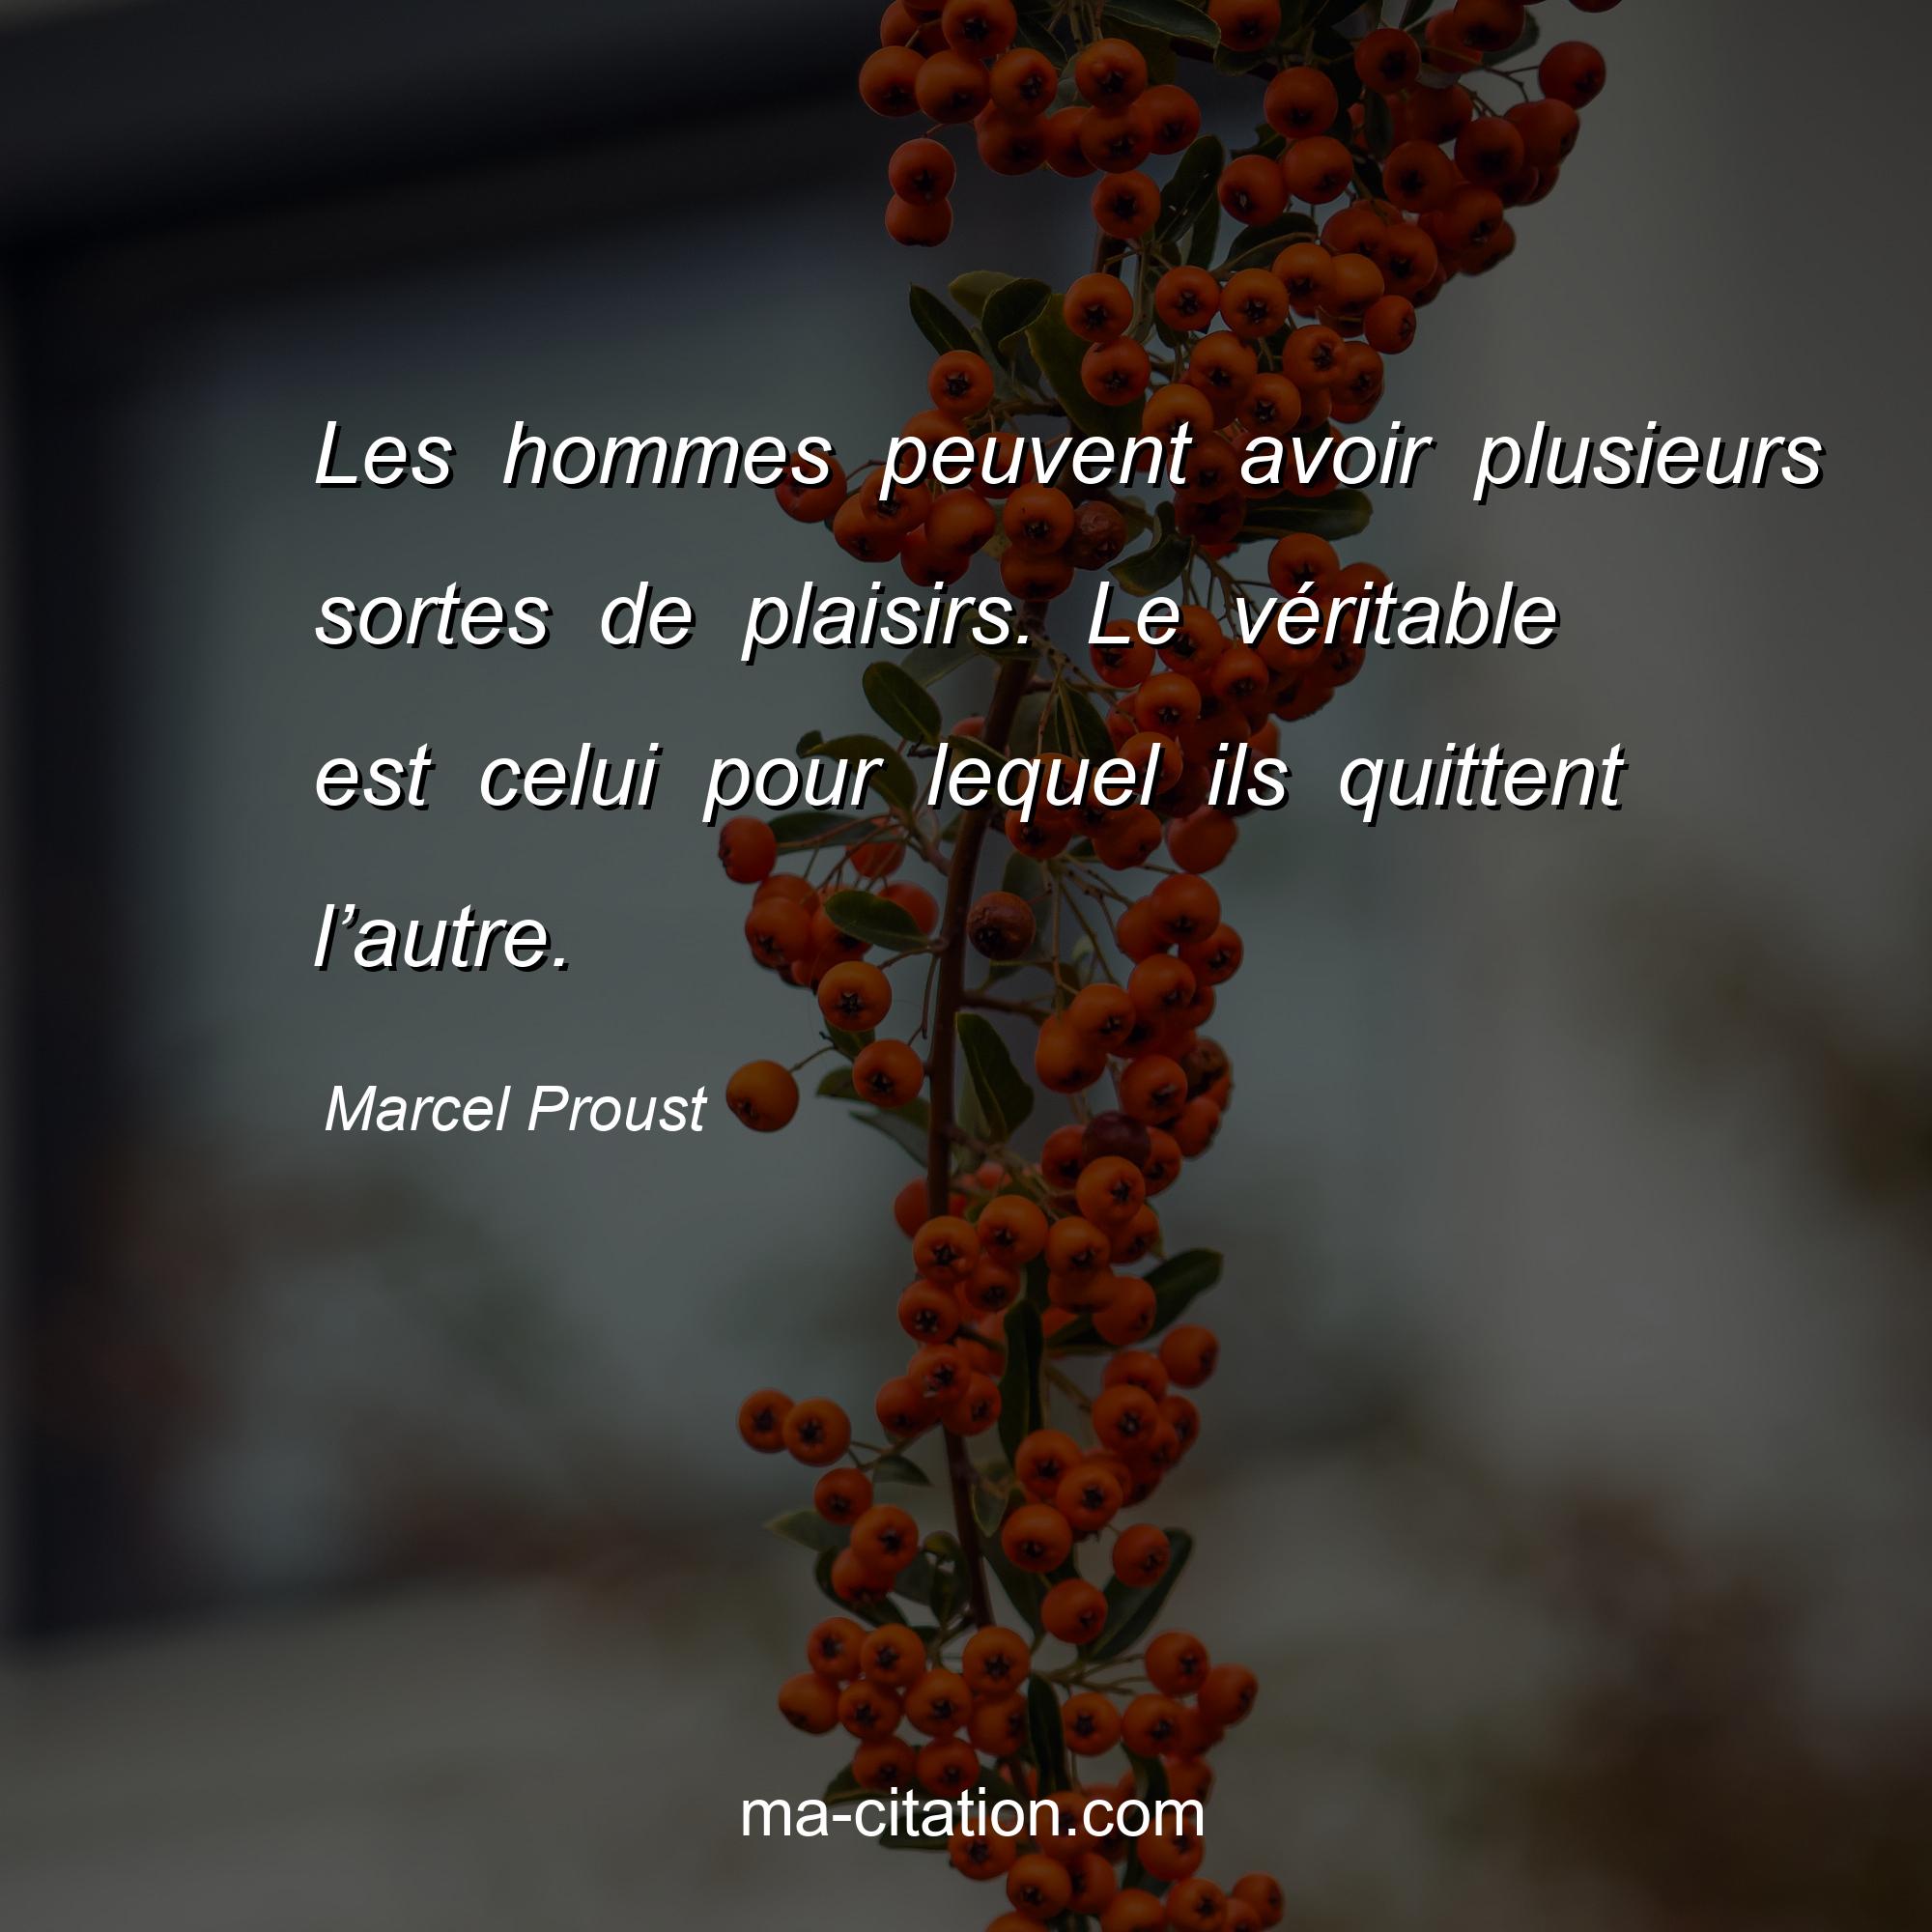 Marcel Proust : Les hommes peuvent avoir plusieurs sortes de plaisirs. Le véritable est celui pour lequel ils quittent l’autre.